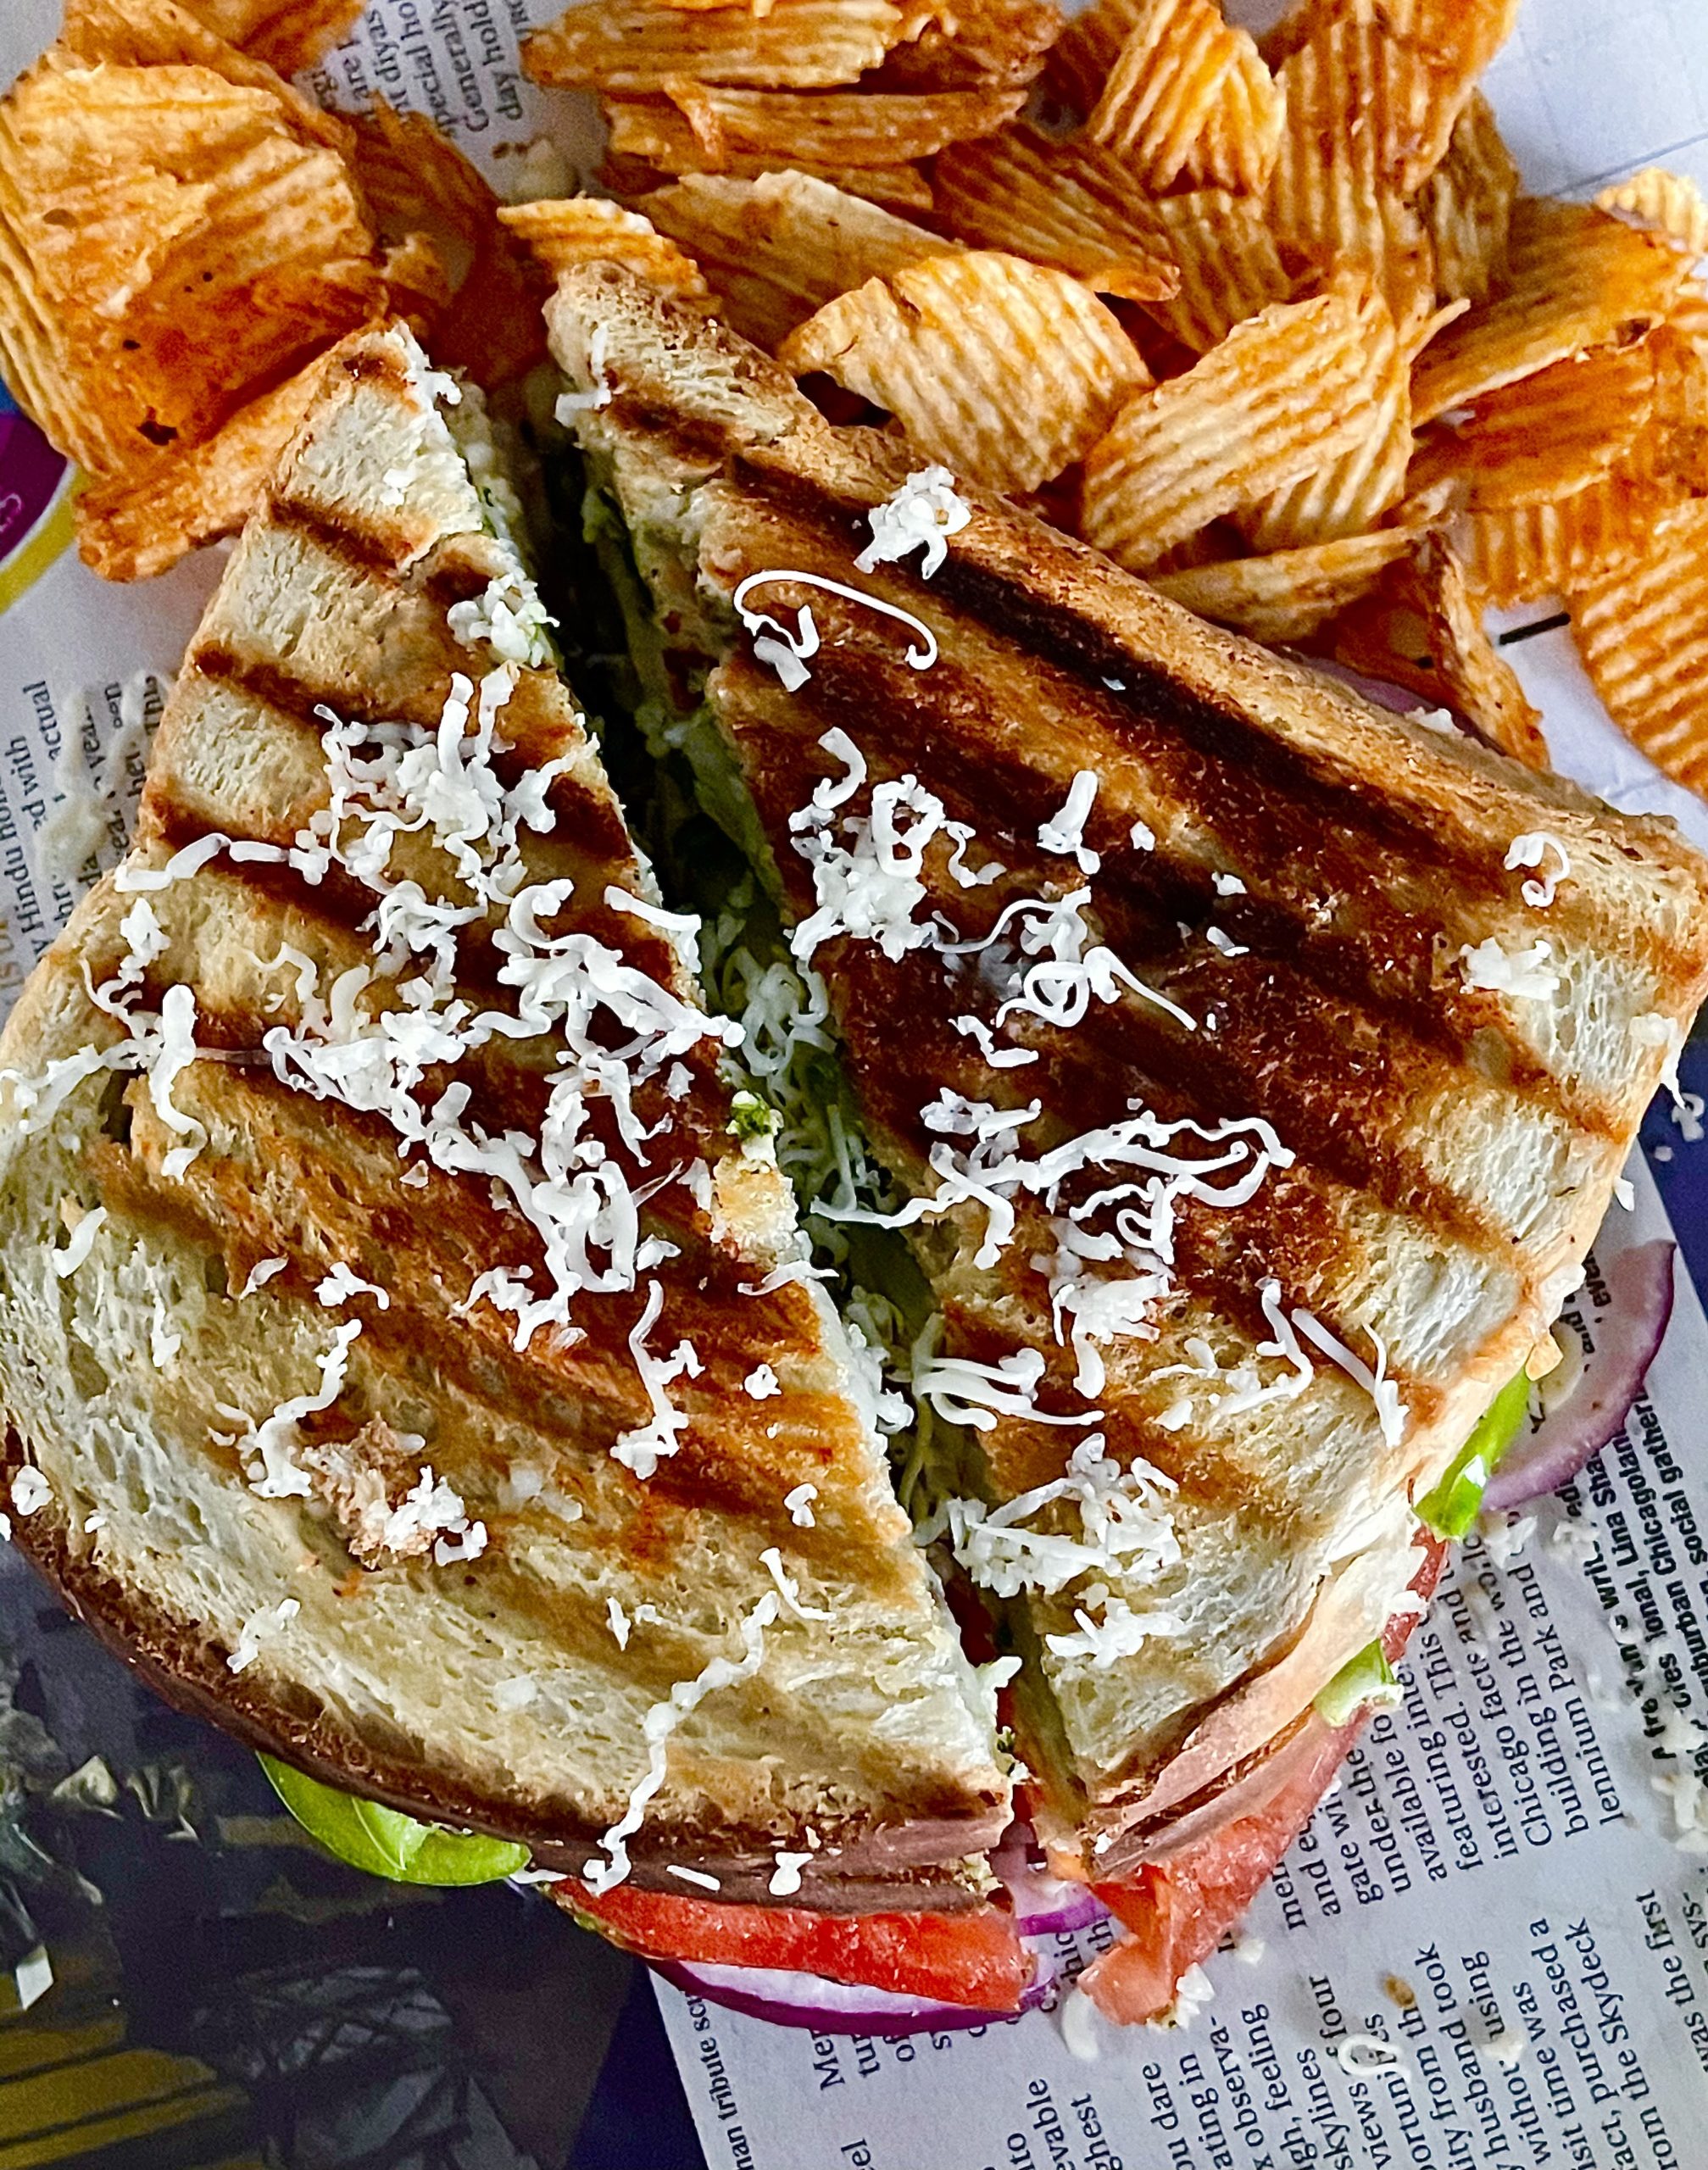 Grilled Cheesus Sandwich Press –